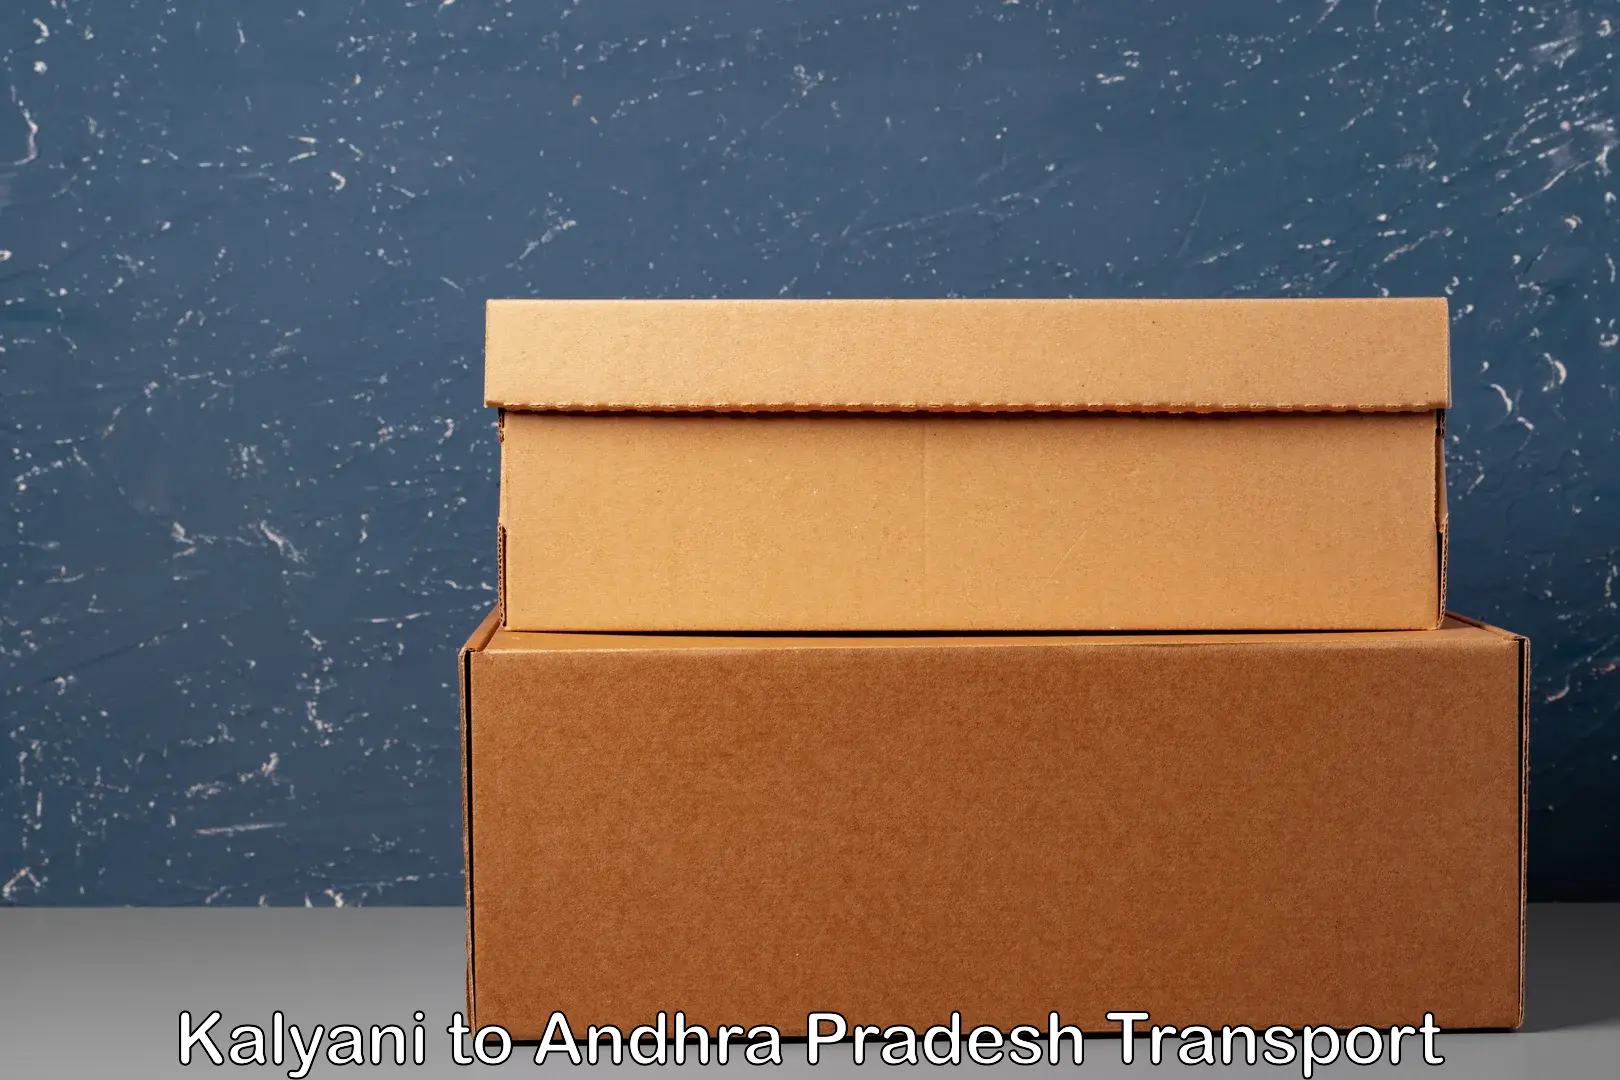 Container transport service Kalyani to Kandukur